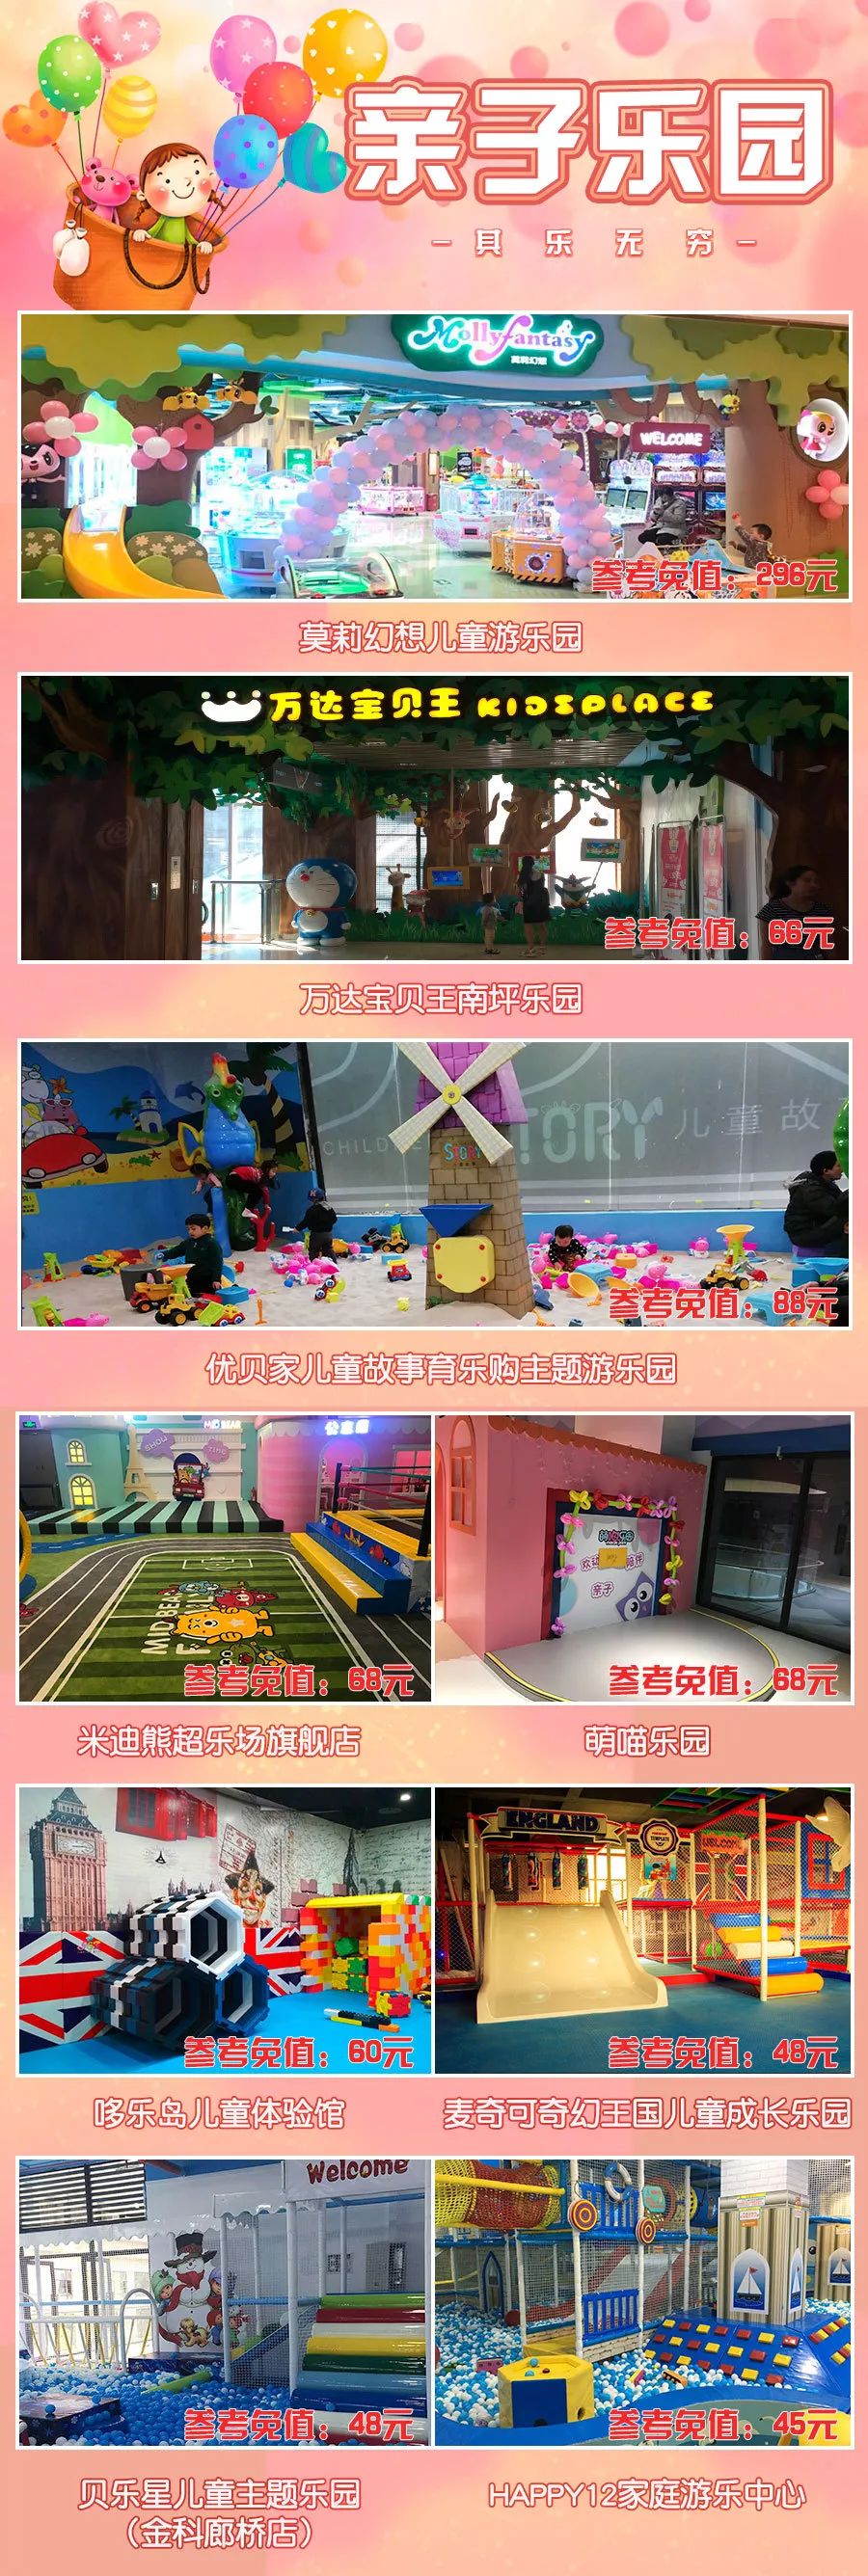 2019重庆亲子游览年票夏季版价格、游览地点